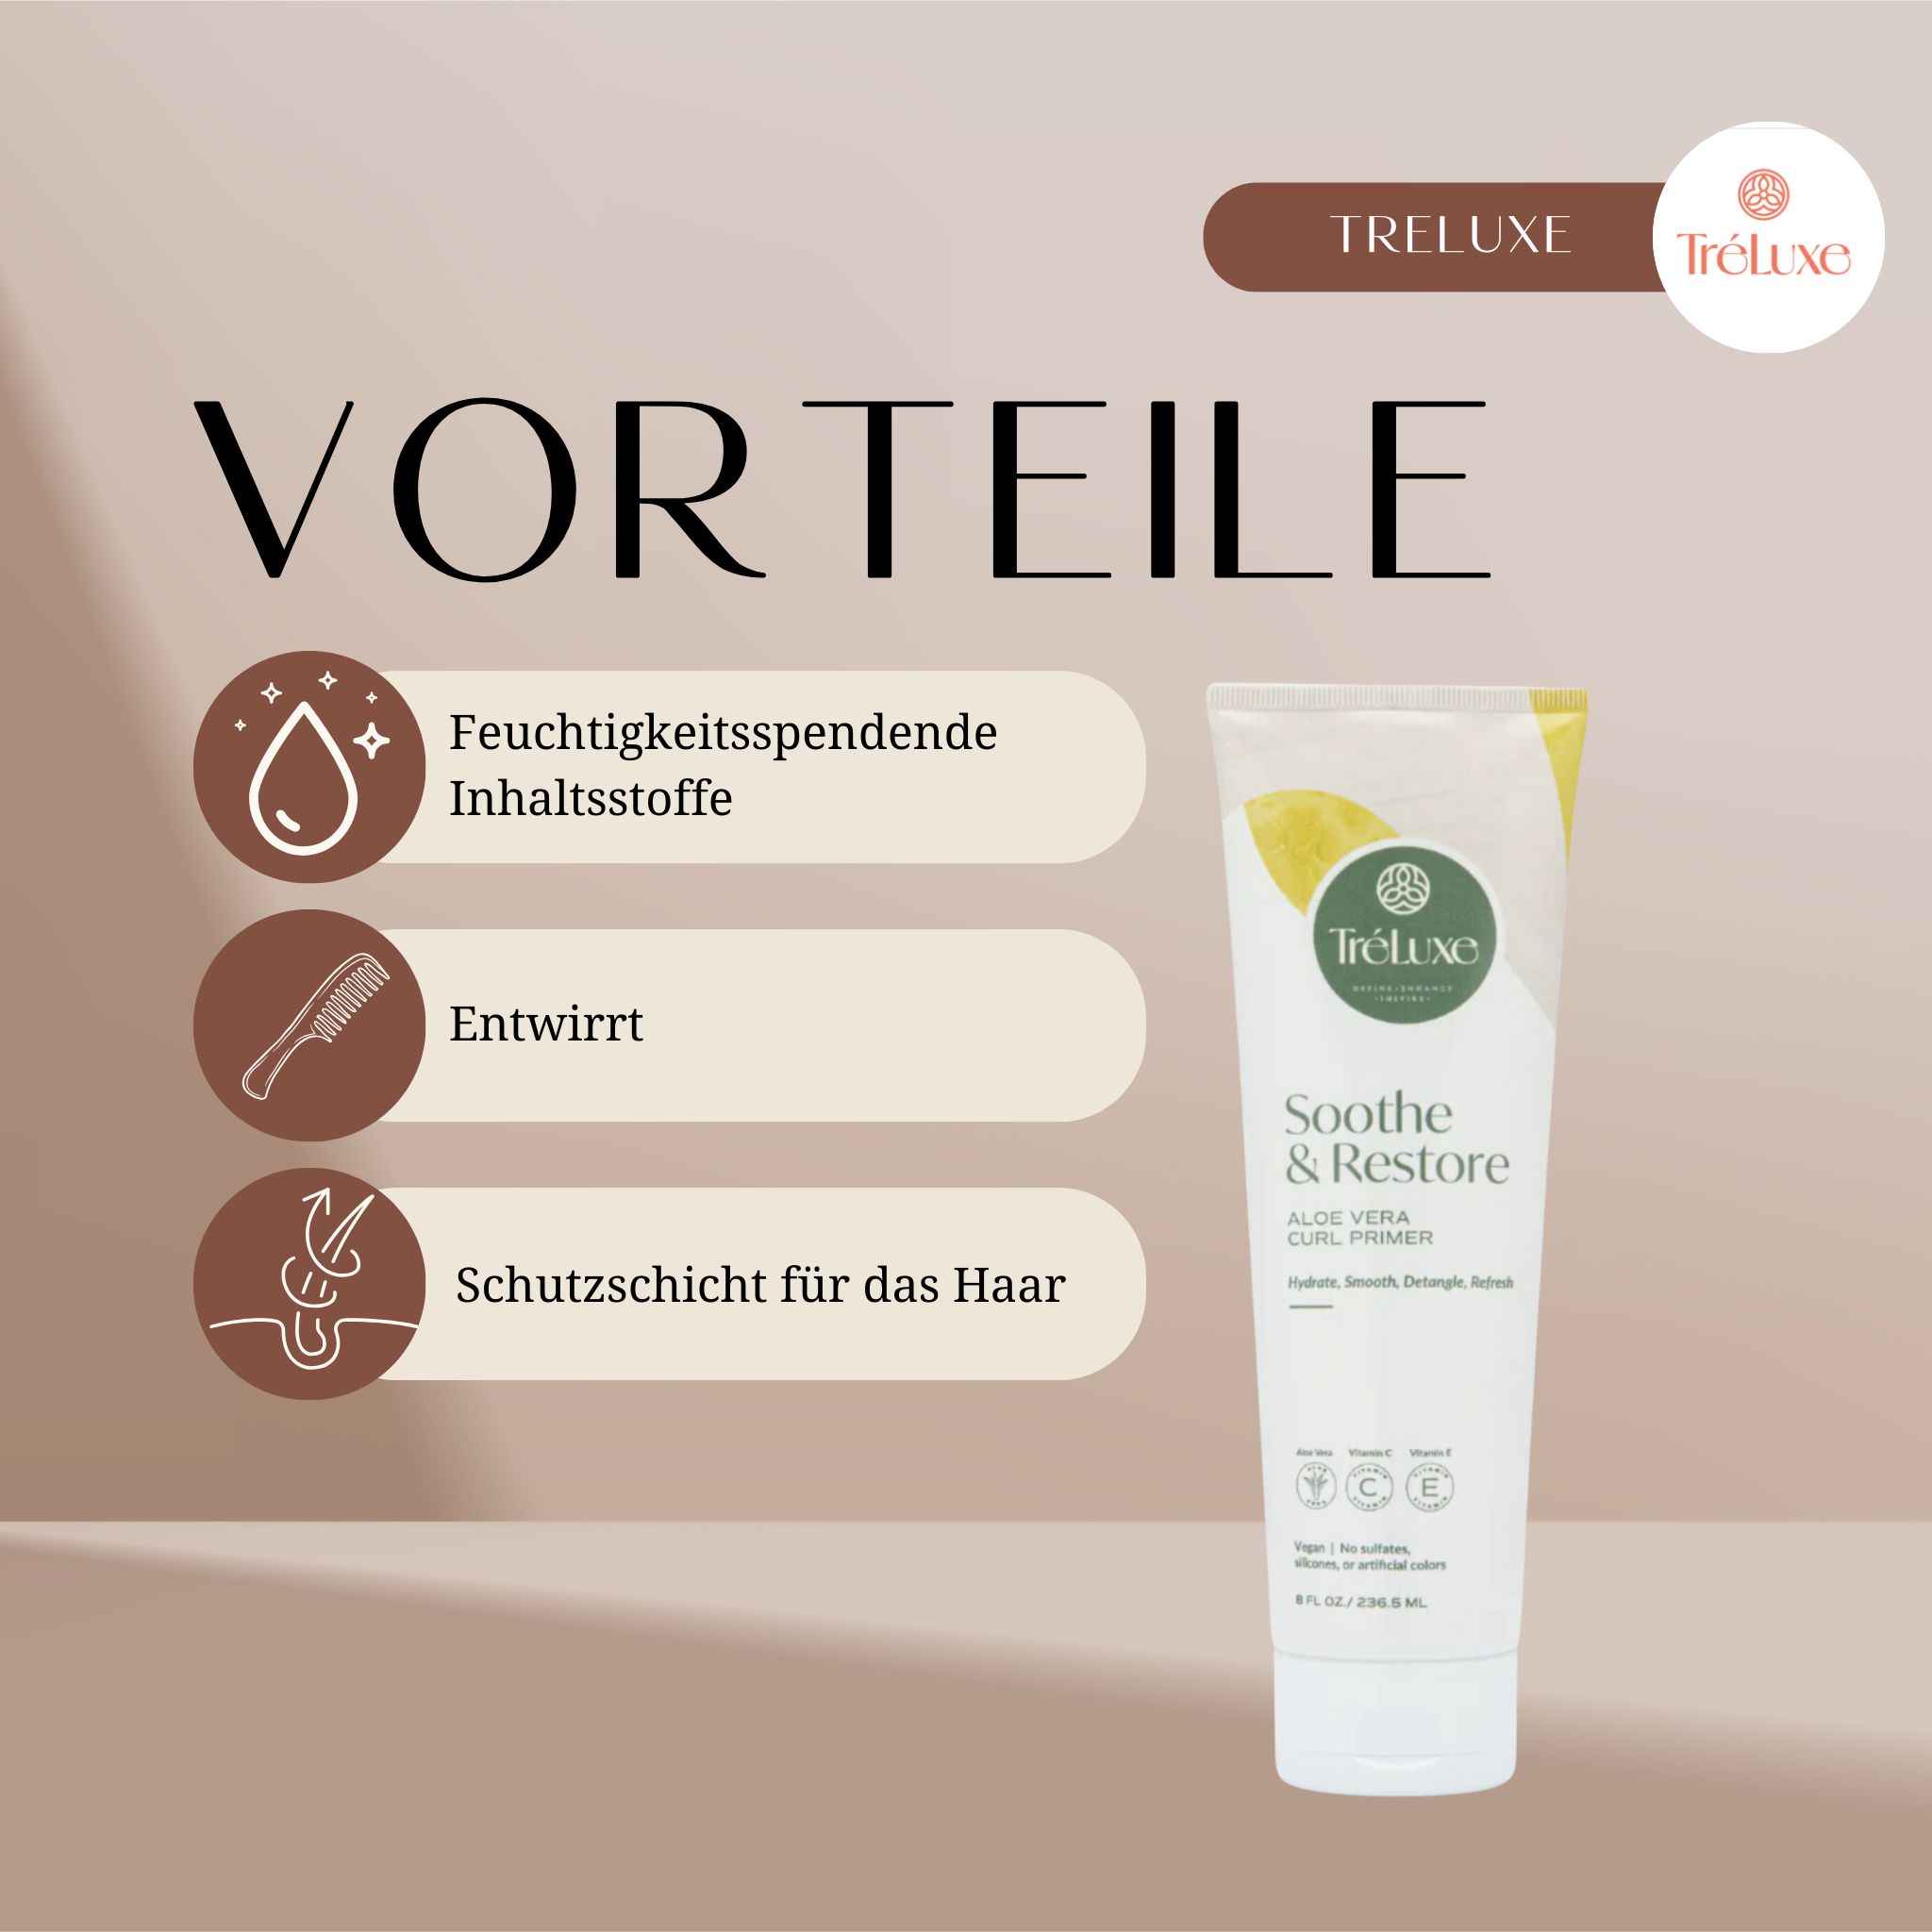 Tréluxe | Soothe & Restore Aloe Vera Curl Primer / 236ml Conditioner Tréluxe